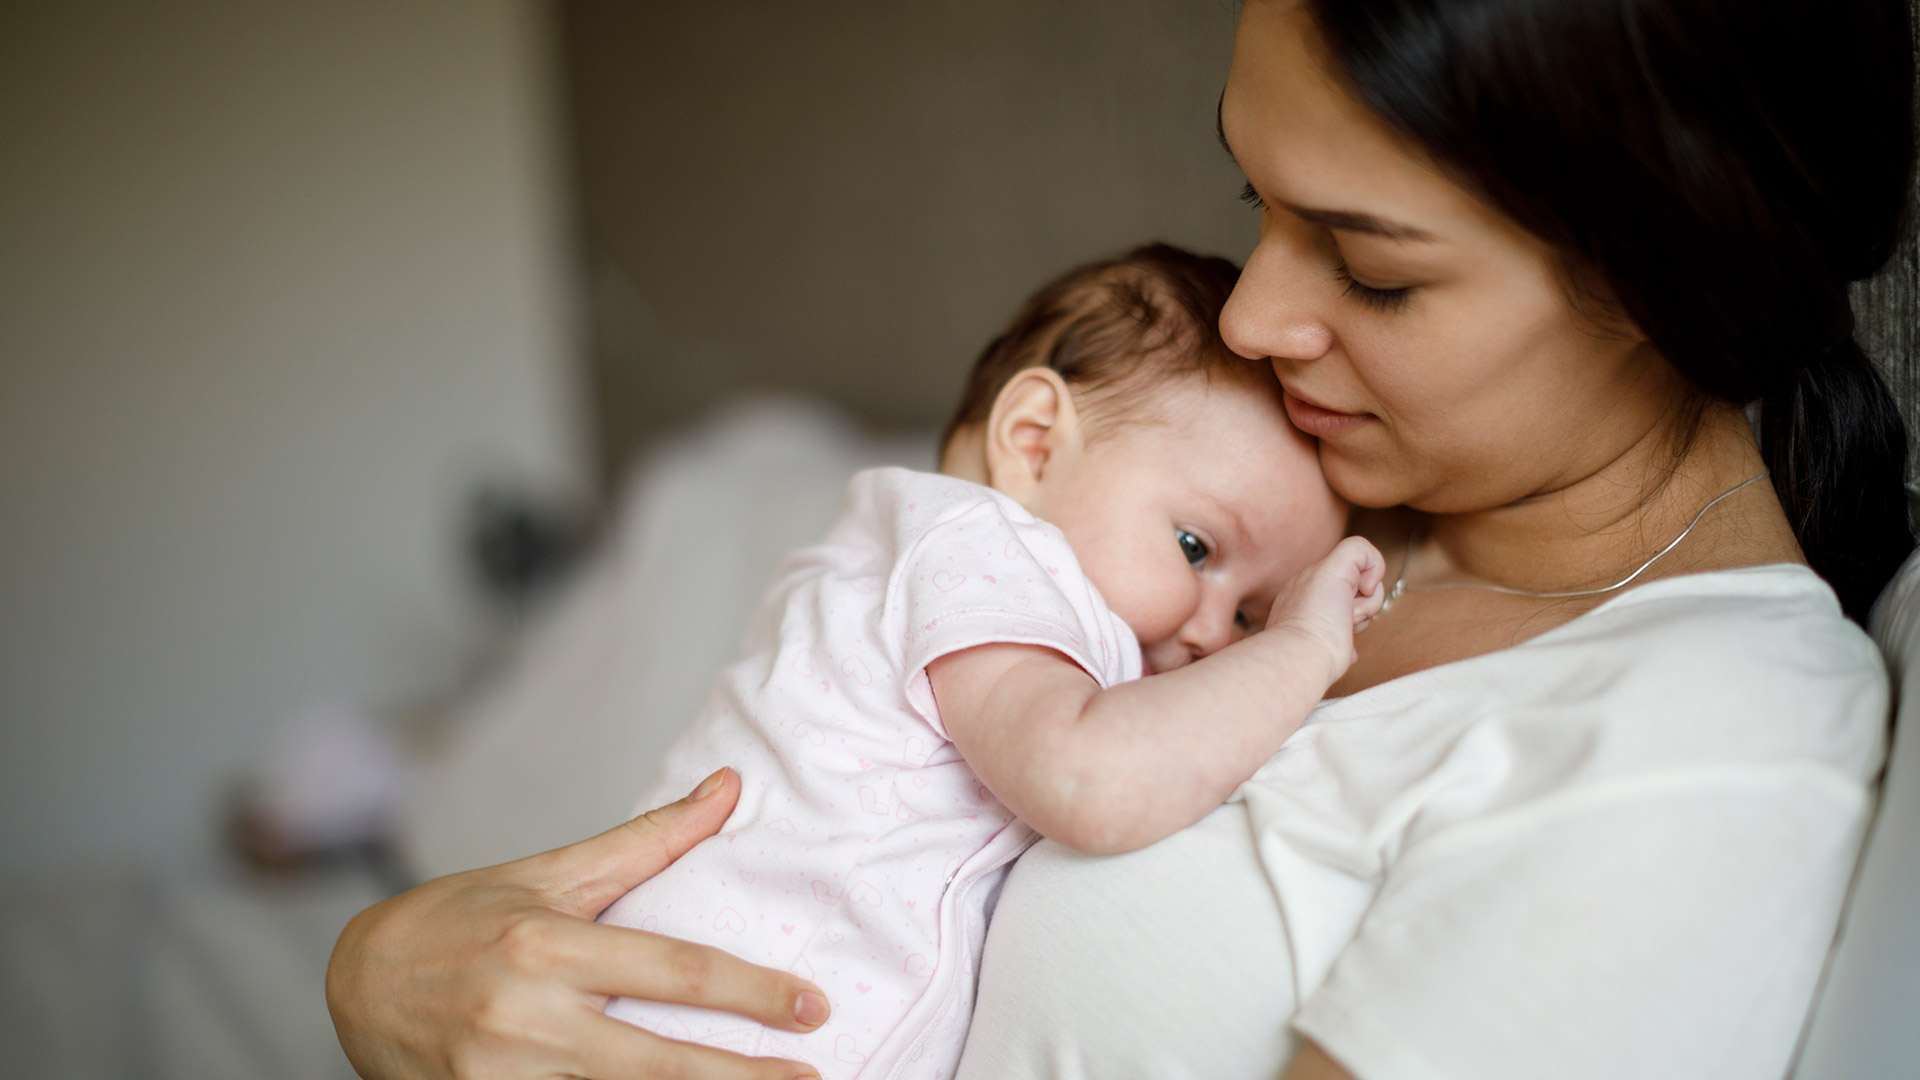 La lactancia materna tiene, como principal barrera, la falta de espacios destinados a este accionar, advierten los expertos